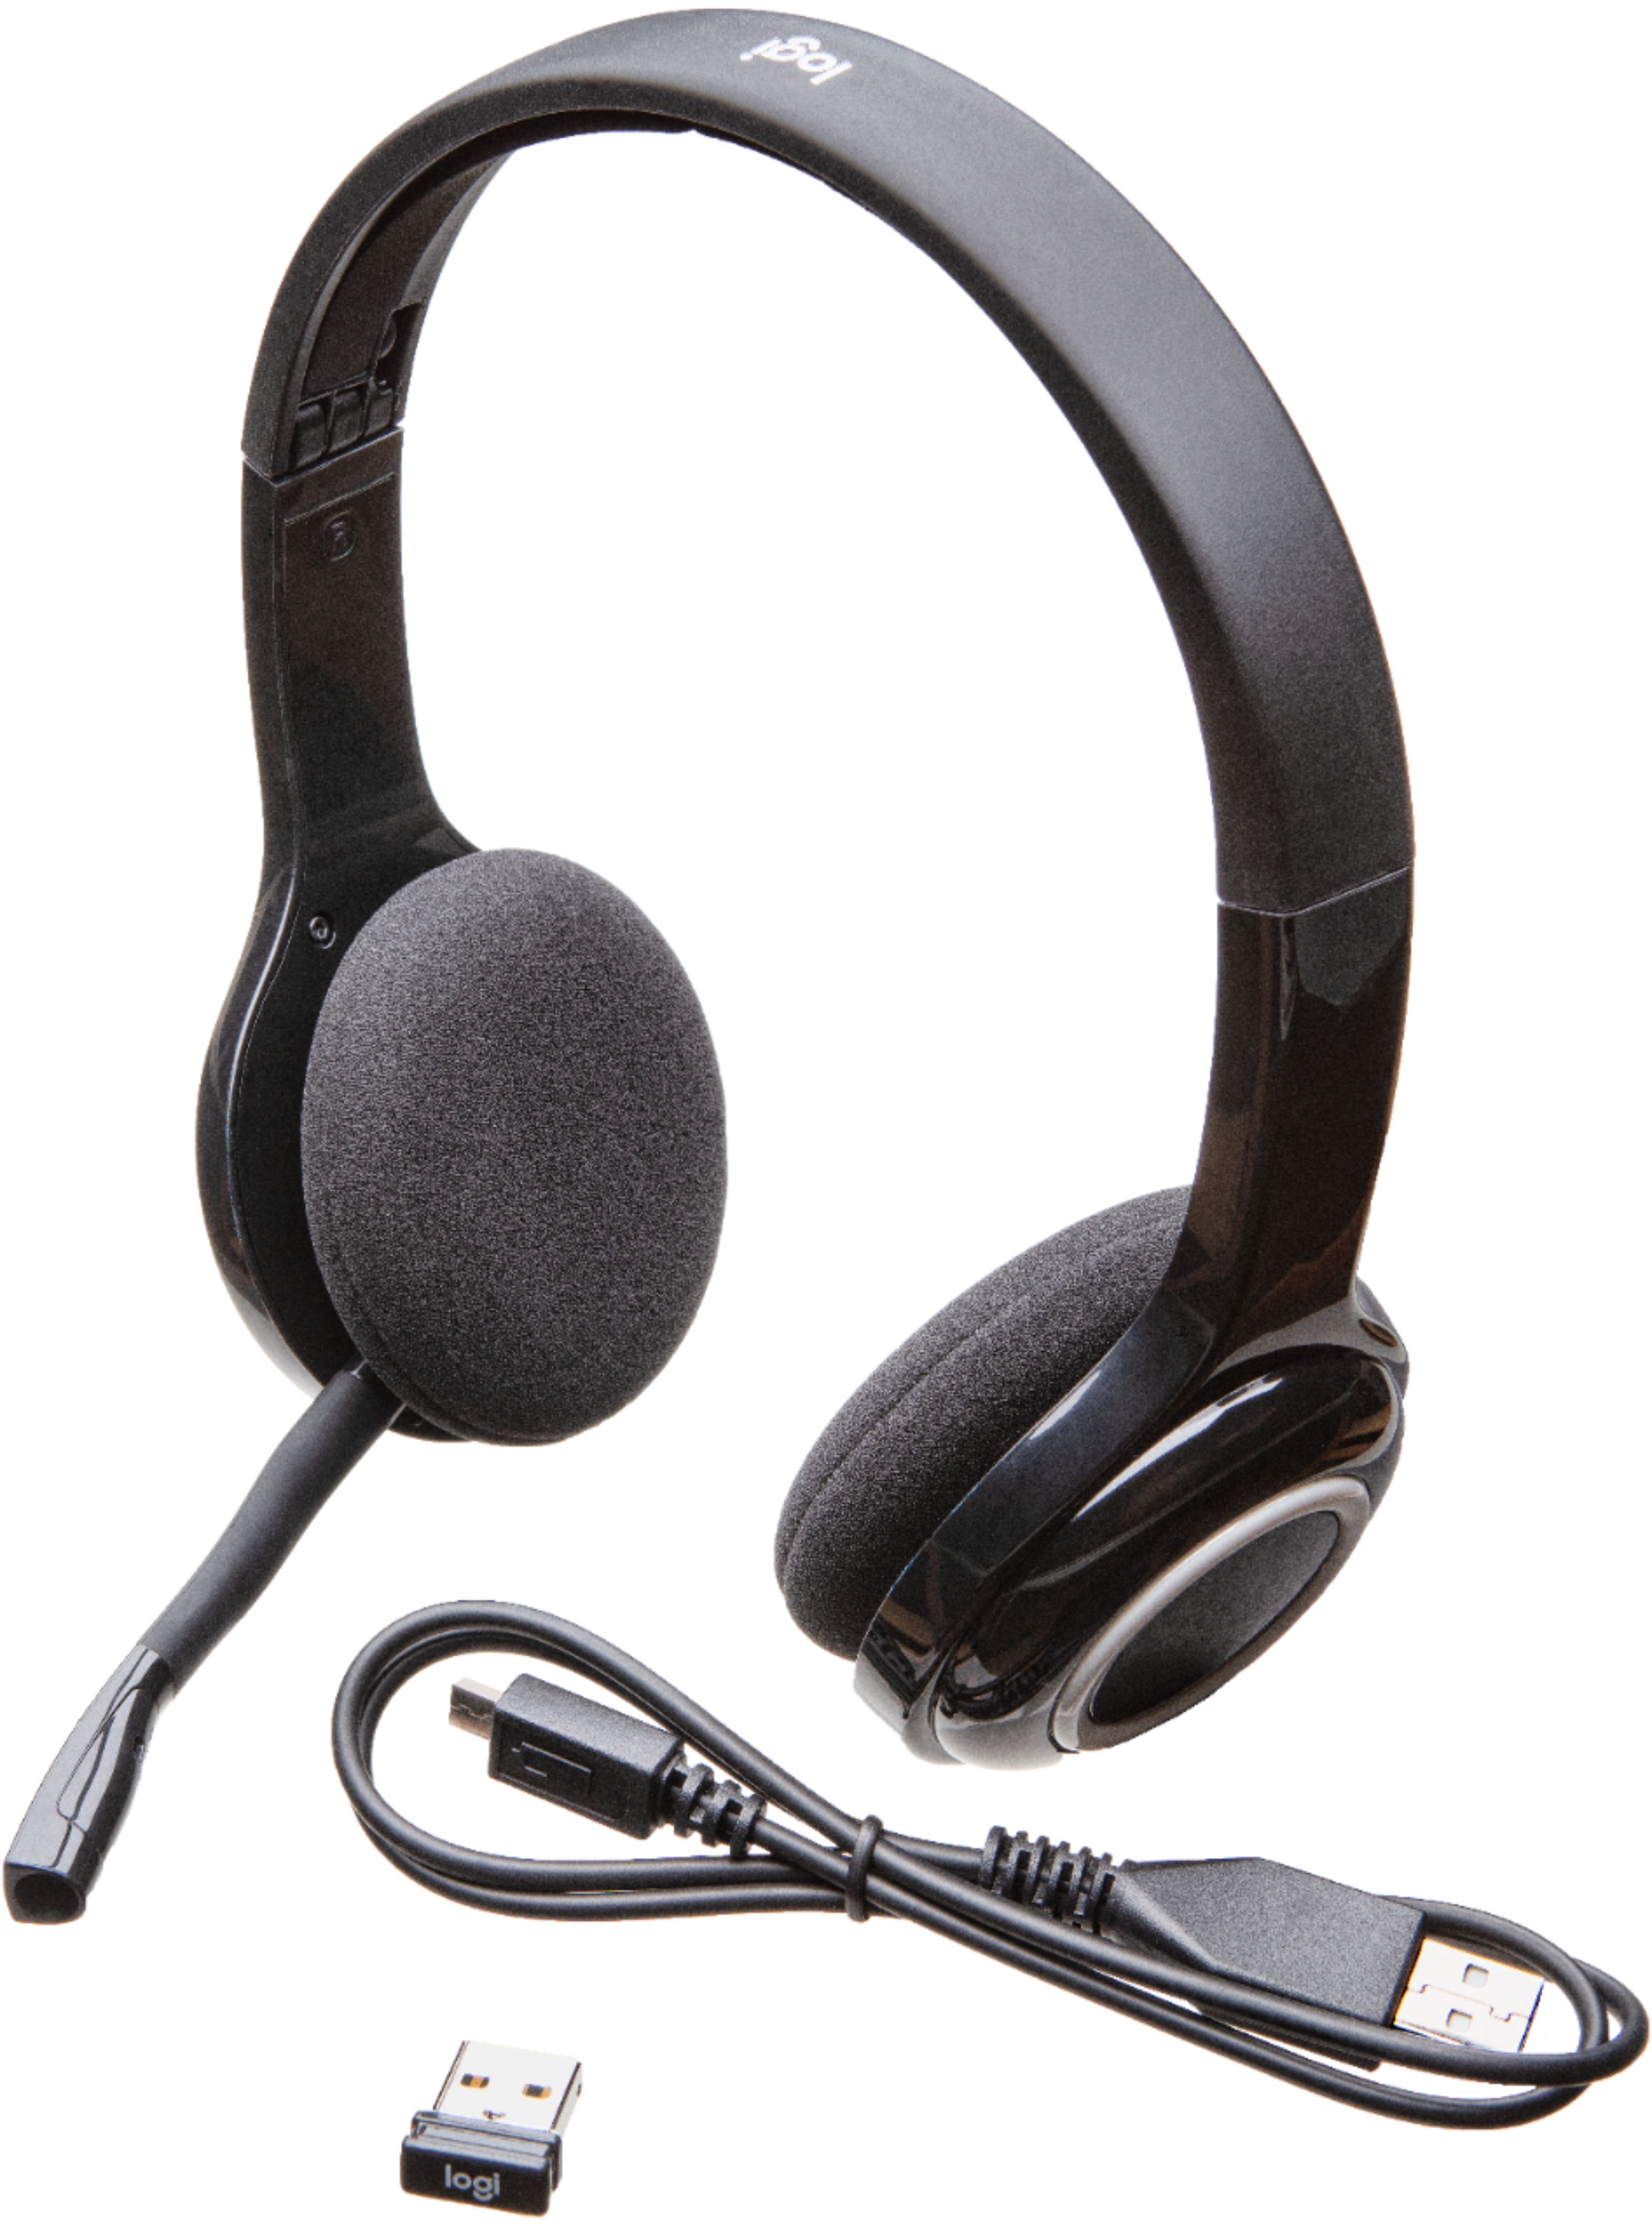 Buy: Logitech H600 RF Wireless Headset Black 981-000341